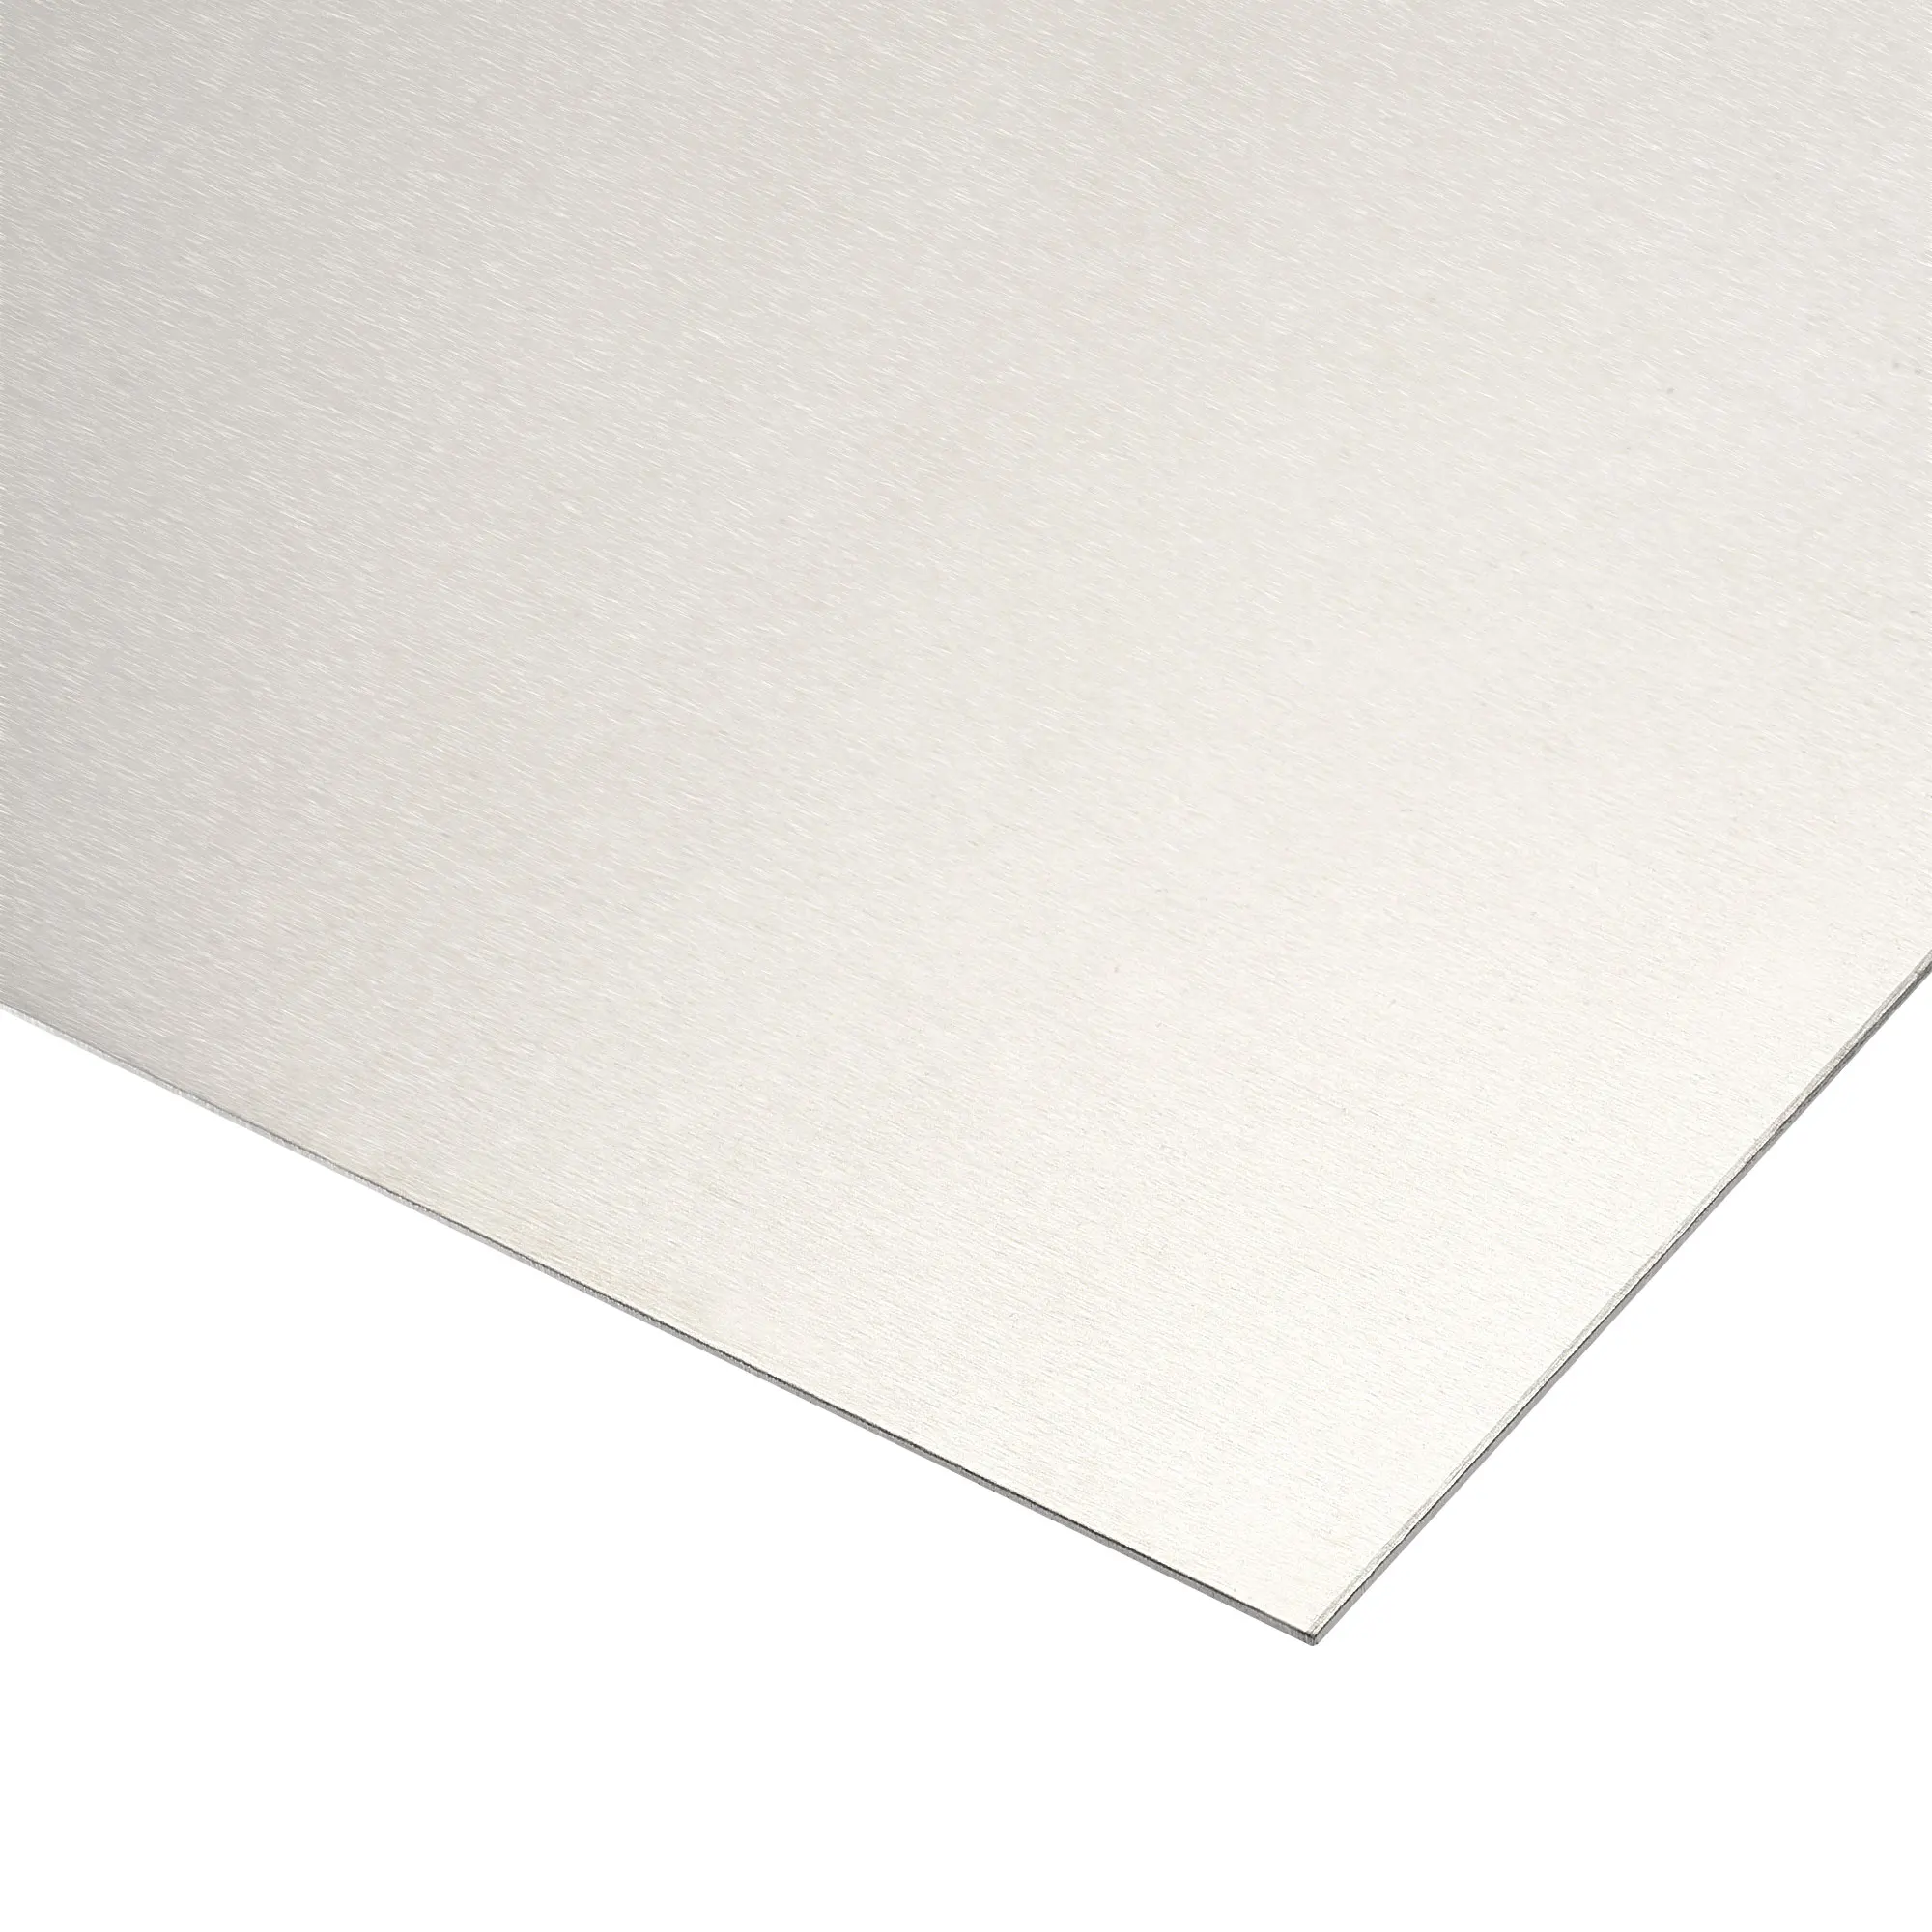 

Uxcell Aluminum Sheet, 300mm x 150mm x 1mm Thickness 5052 Aluminum Plate